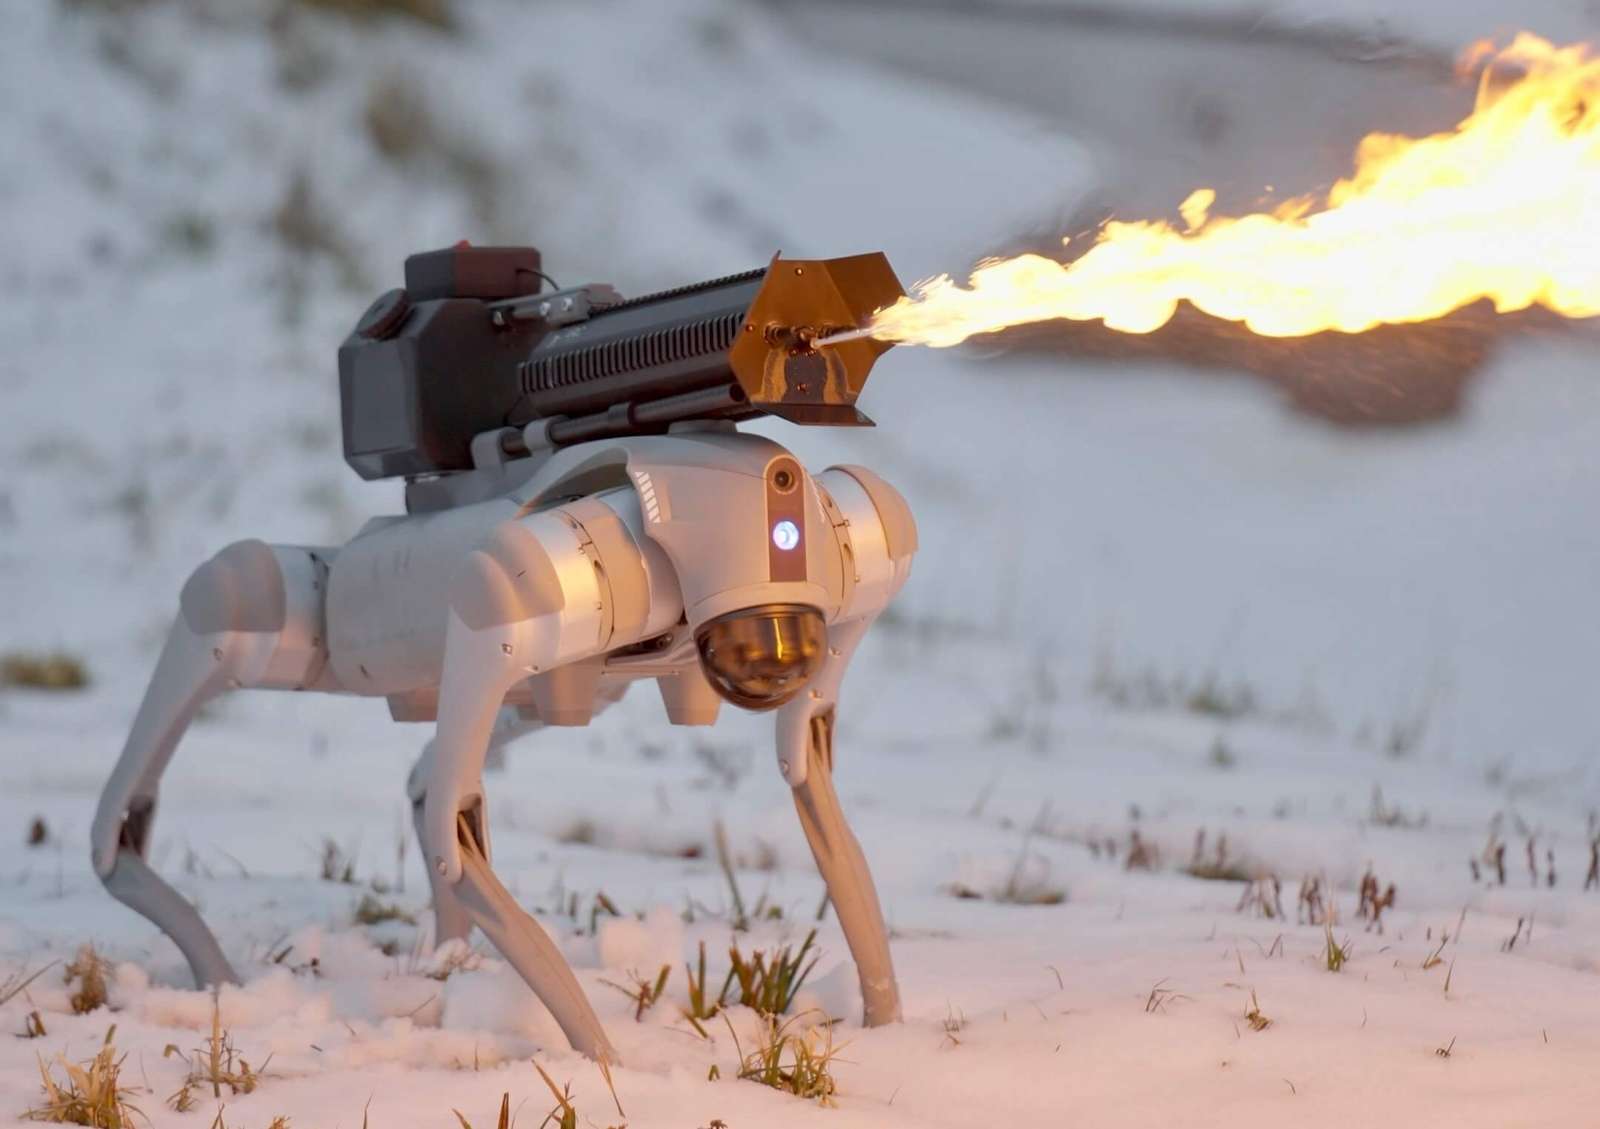 Préparez-vous à courir : le robot-chien lance-flammes est désormais en vente libre !